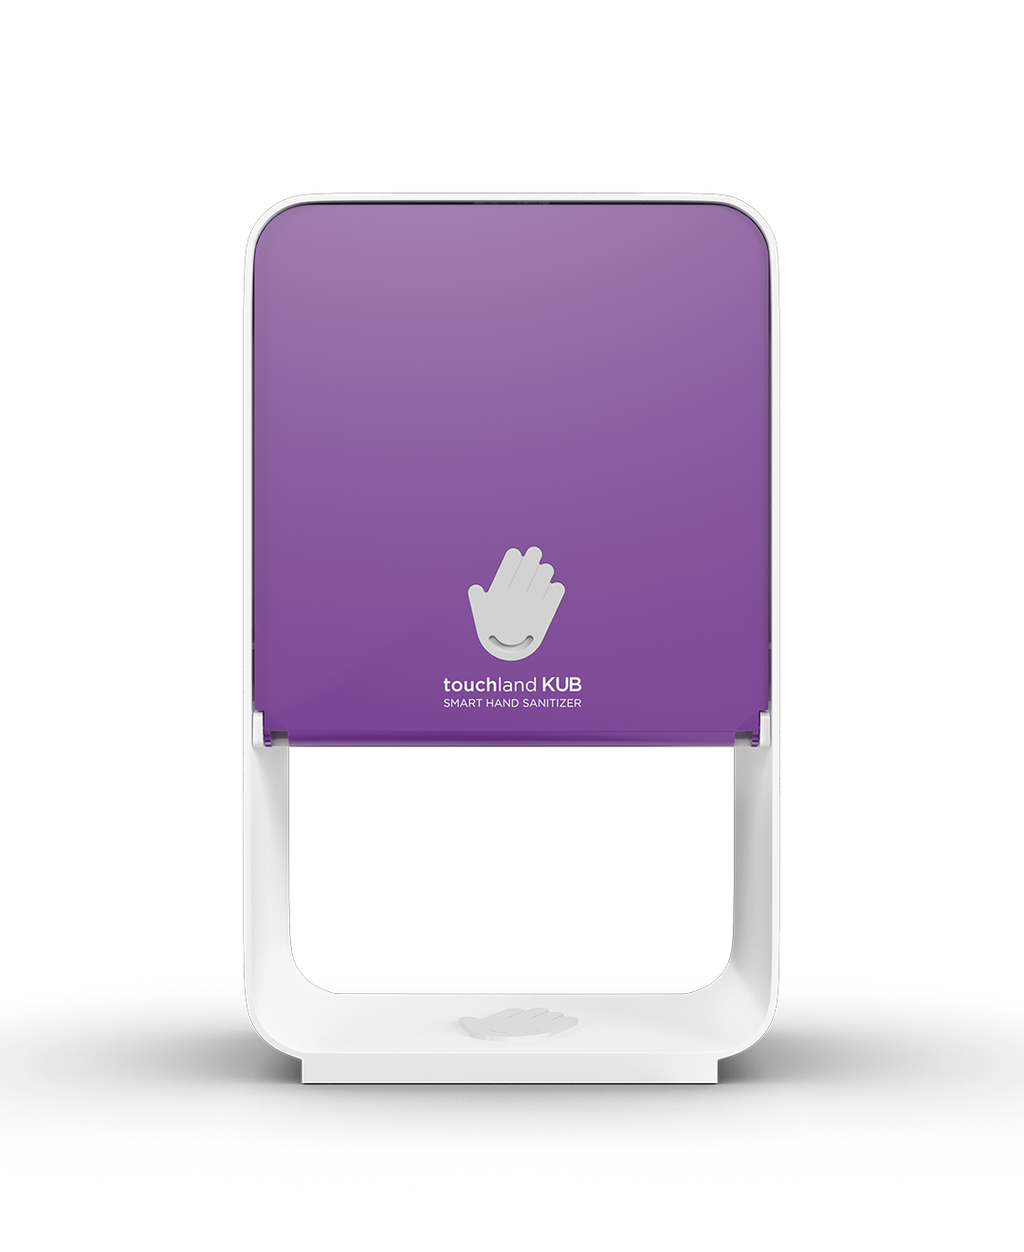 Touchland kub dispenser in velvet purple color on white background